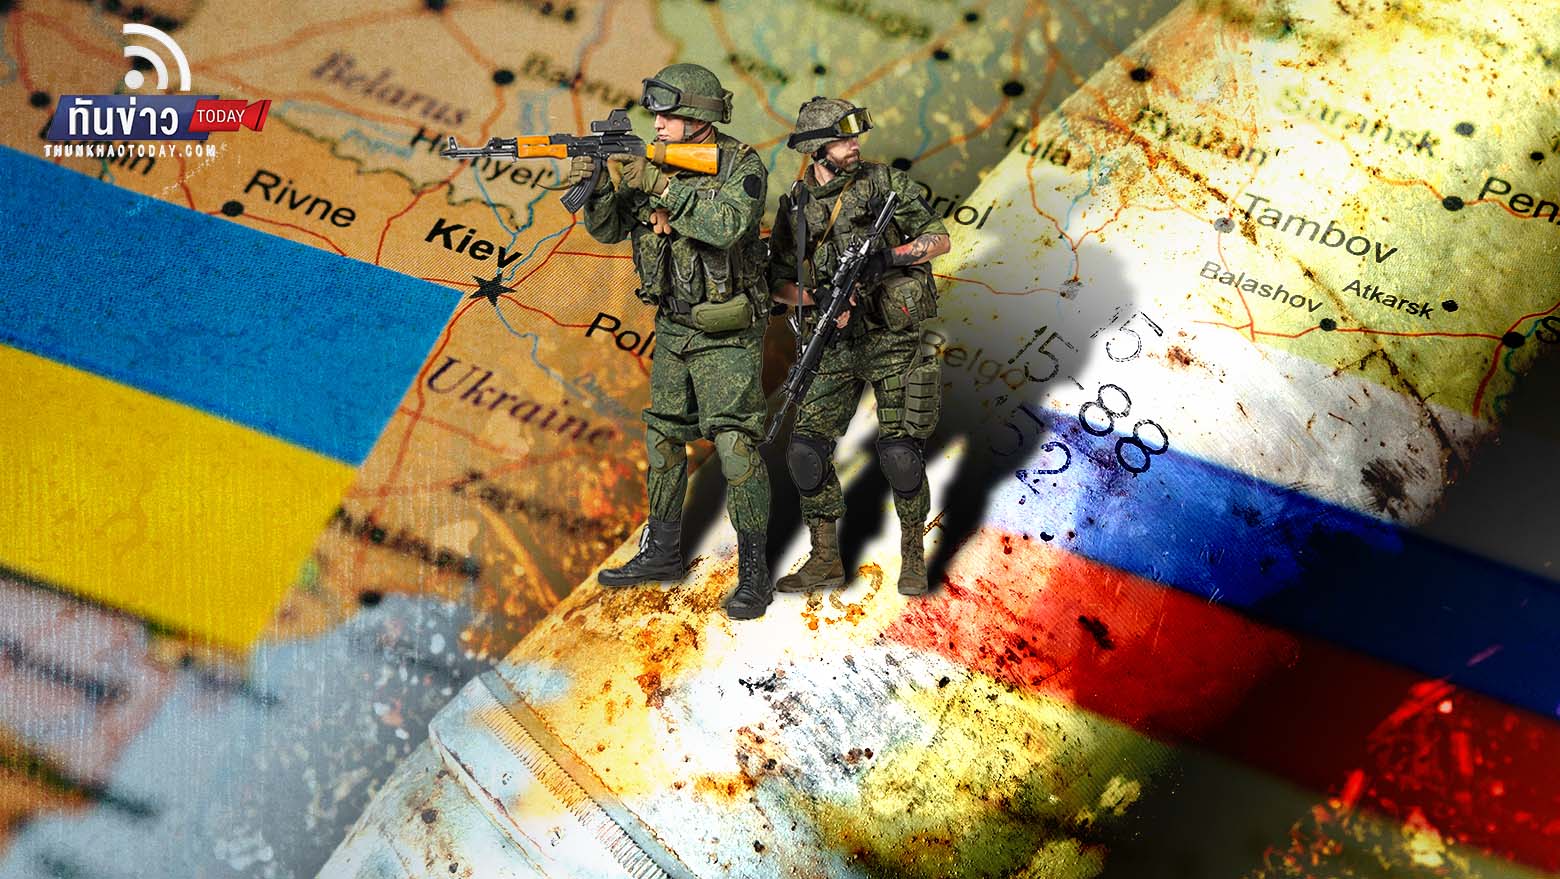 “ปูติน” ย้ำรัสเซียจะปักหลักต่อสู้ในยูเครนไปอีกนาน และนิวเคลียร์มีไว้ป้องกันตัวไม่ชิงโจมตีก่อน